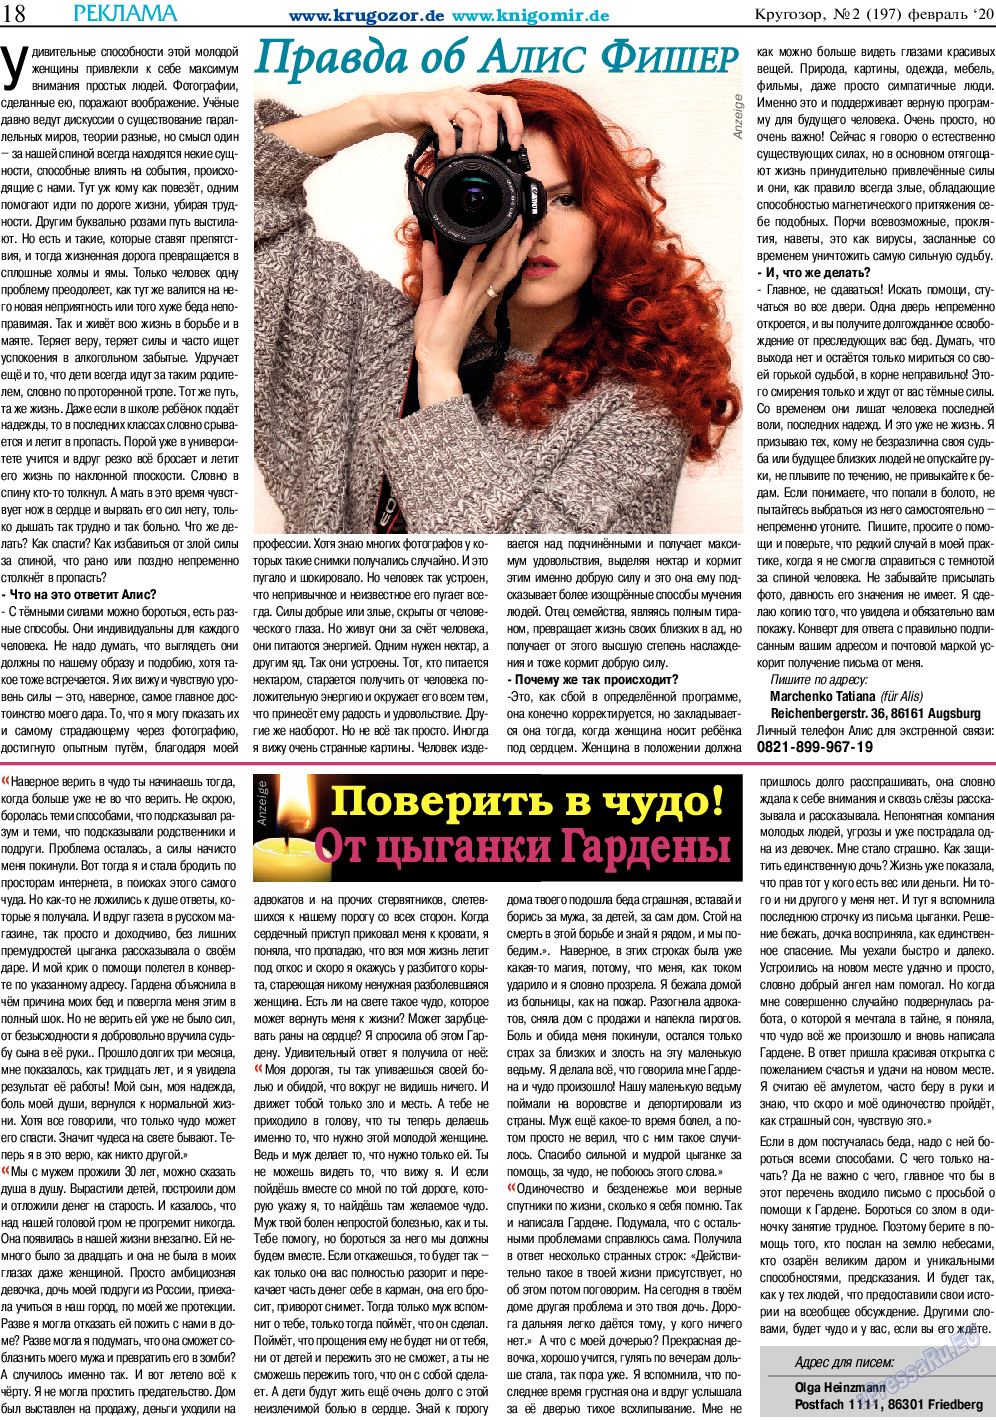 Кругозор, газета. 2020 №2 стр.18